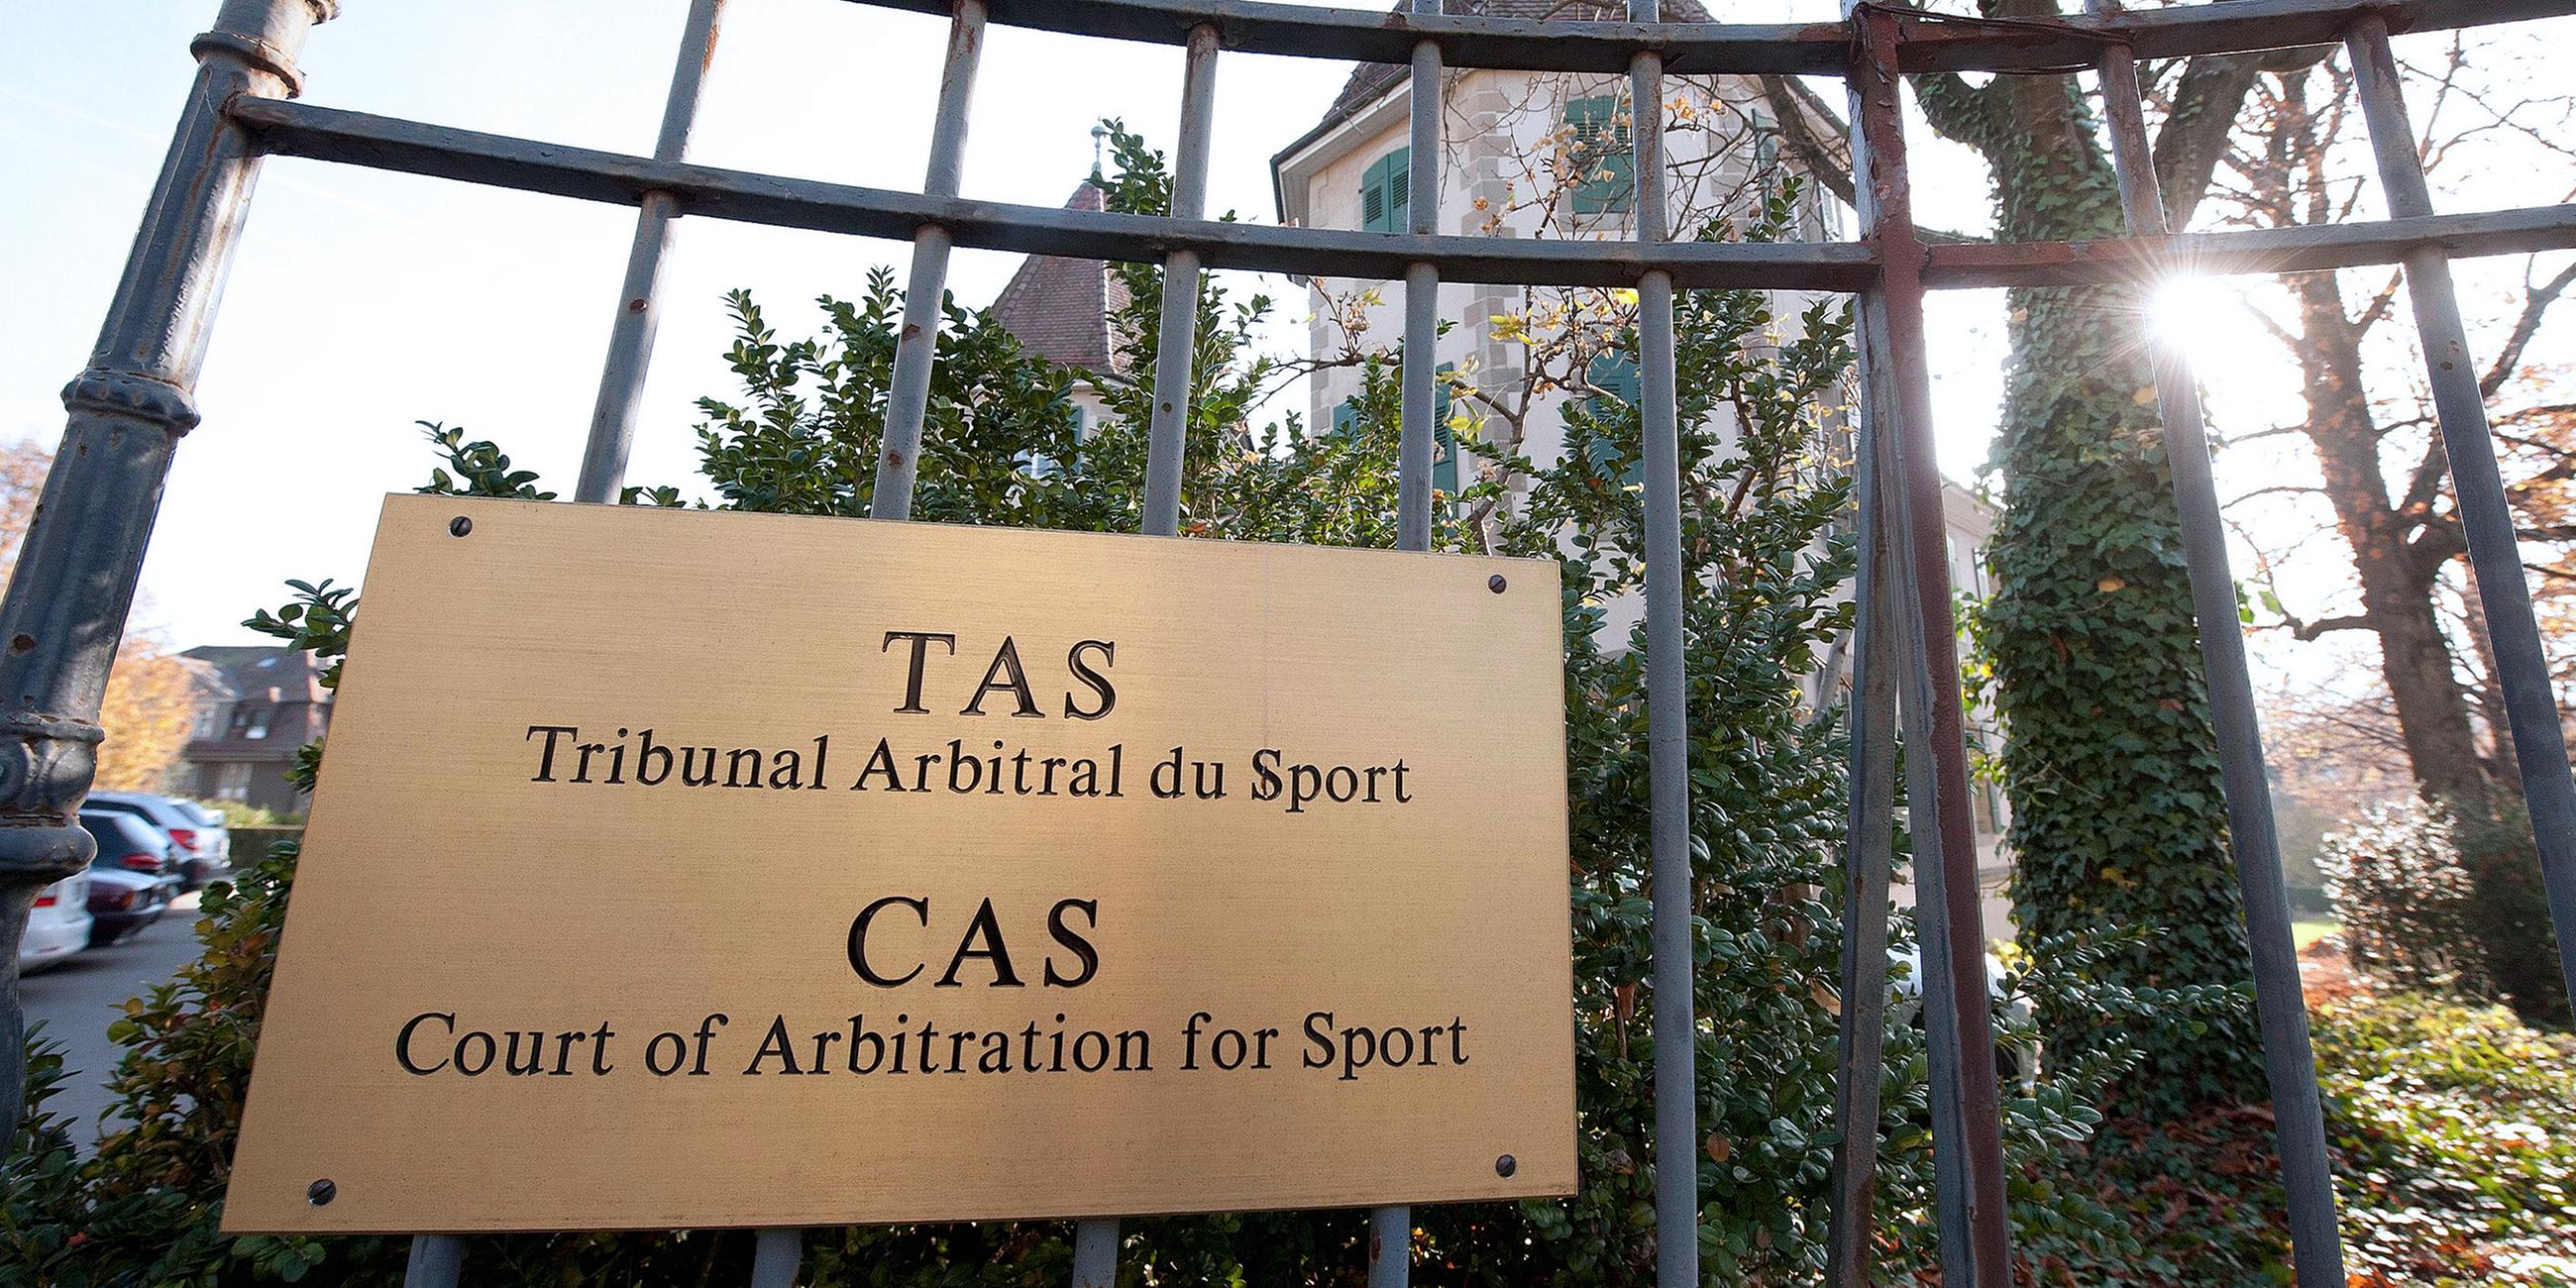 Archiv: Außenansicht vom Internationalen Sportgerichtshof (CAS) am 21.11.2011 in Lausanne, Schweiz